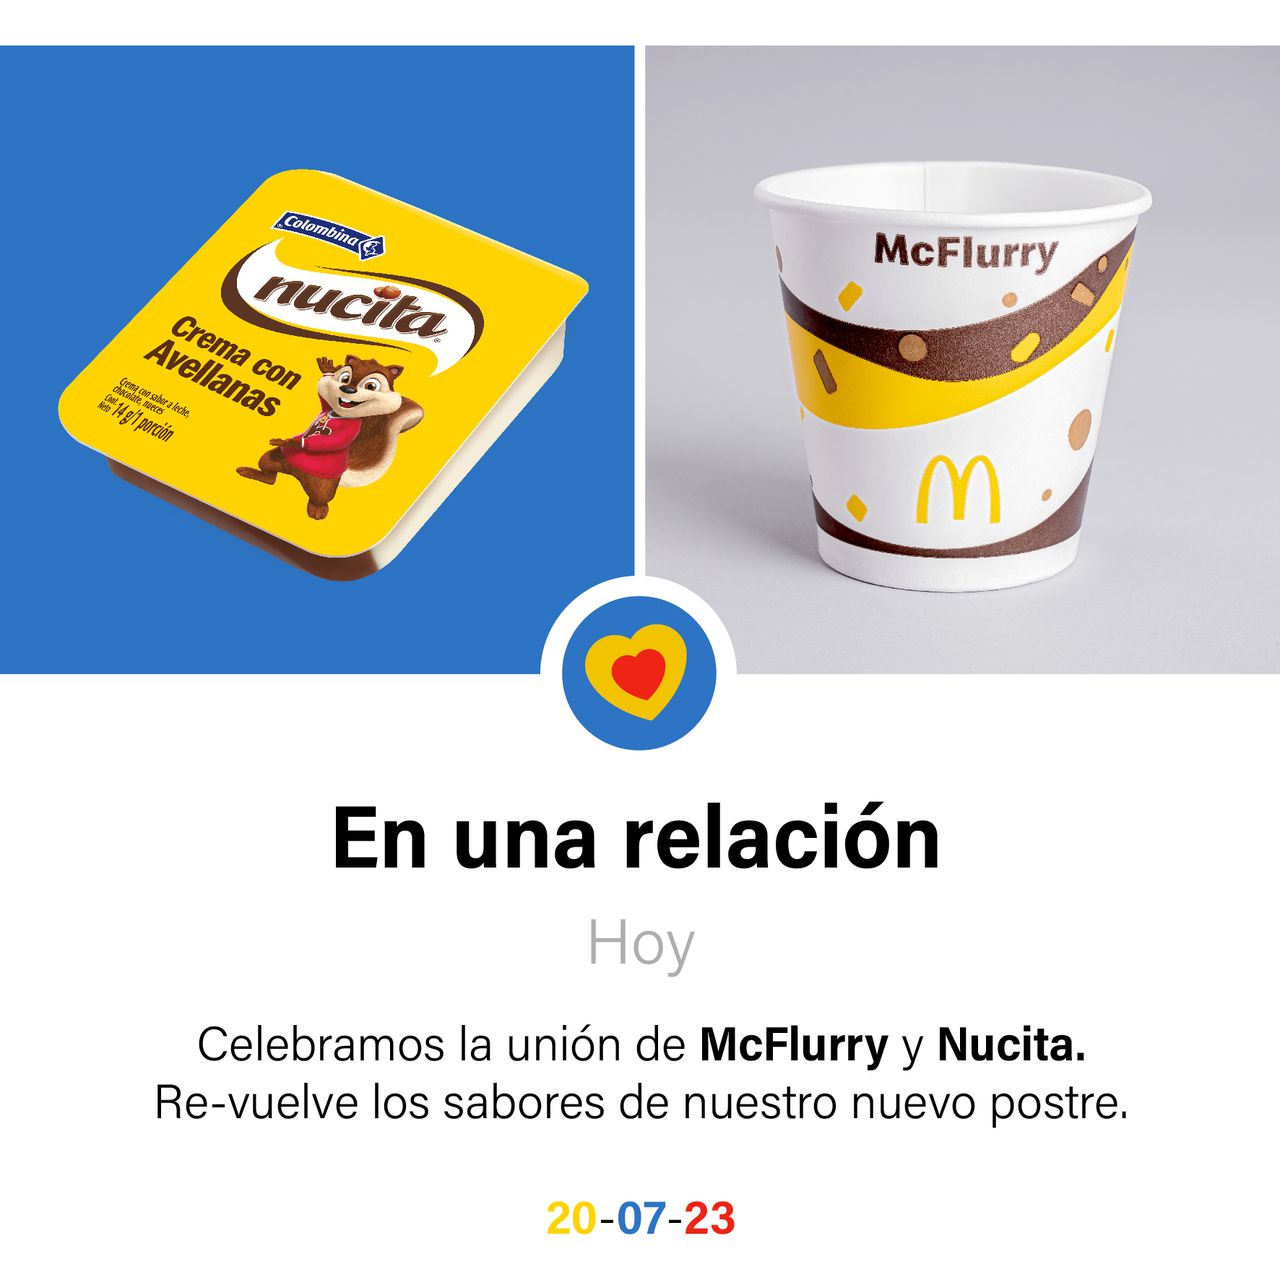 Por medio de esta imagen, las compañías hicieron el lanzamiento oficial del McFlurry Nucita.